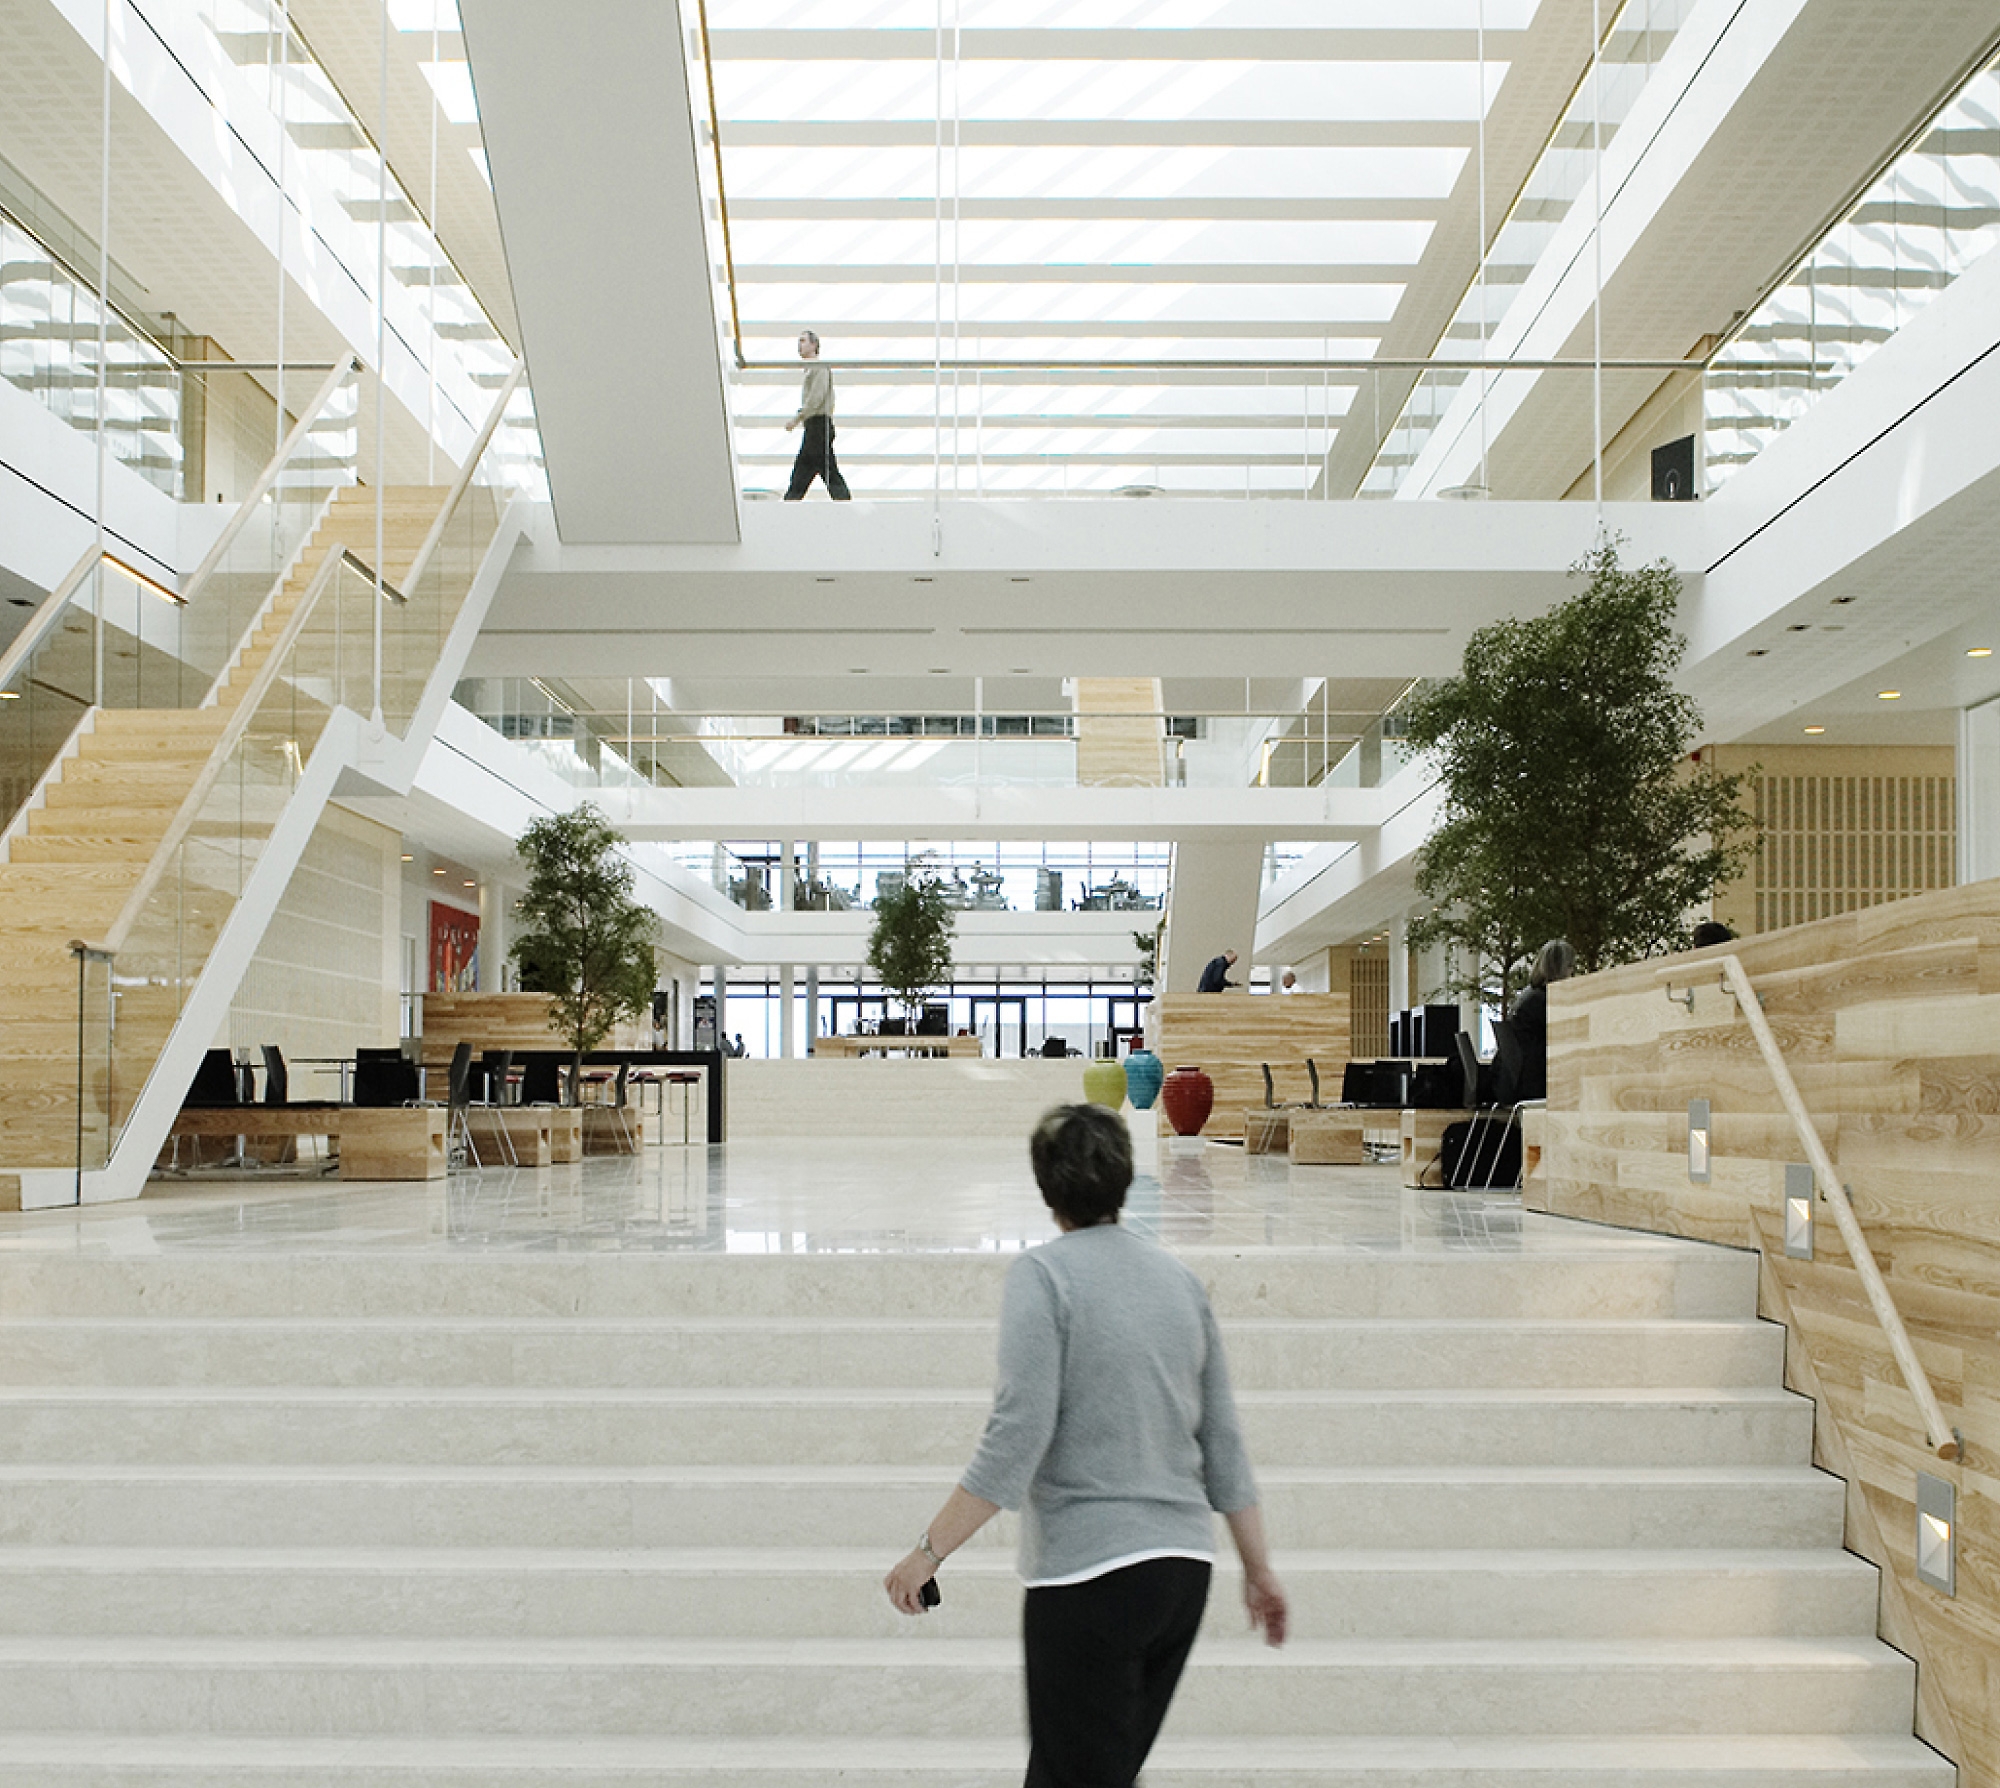 חדר הכניסה המודרני במשרד כולל גרם מדרגות לבן גדול, רכיבי עיצוב מעץ ואנשים הולכים. אווירה בהירה ומרווחת.